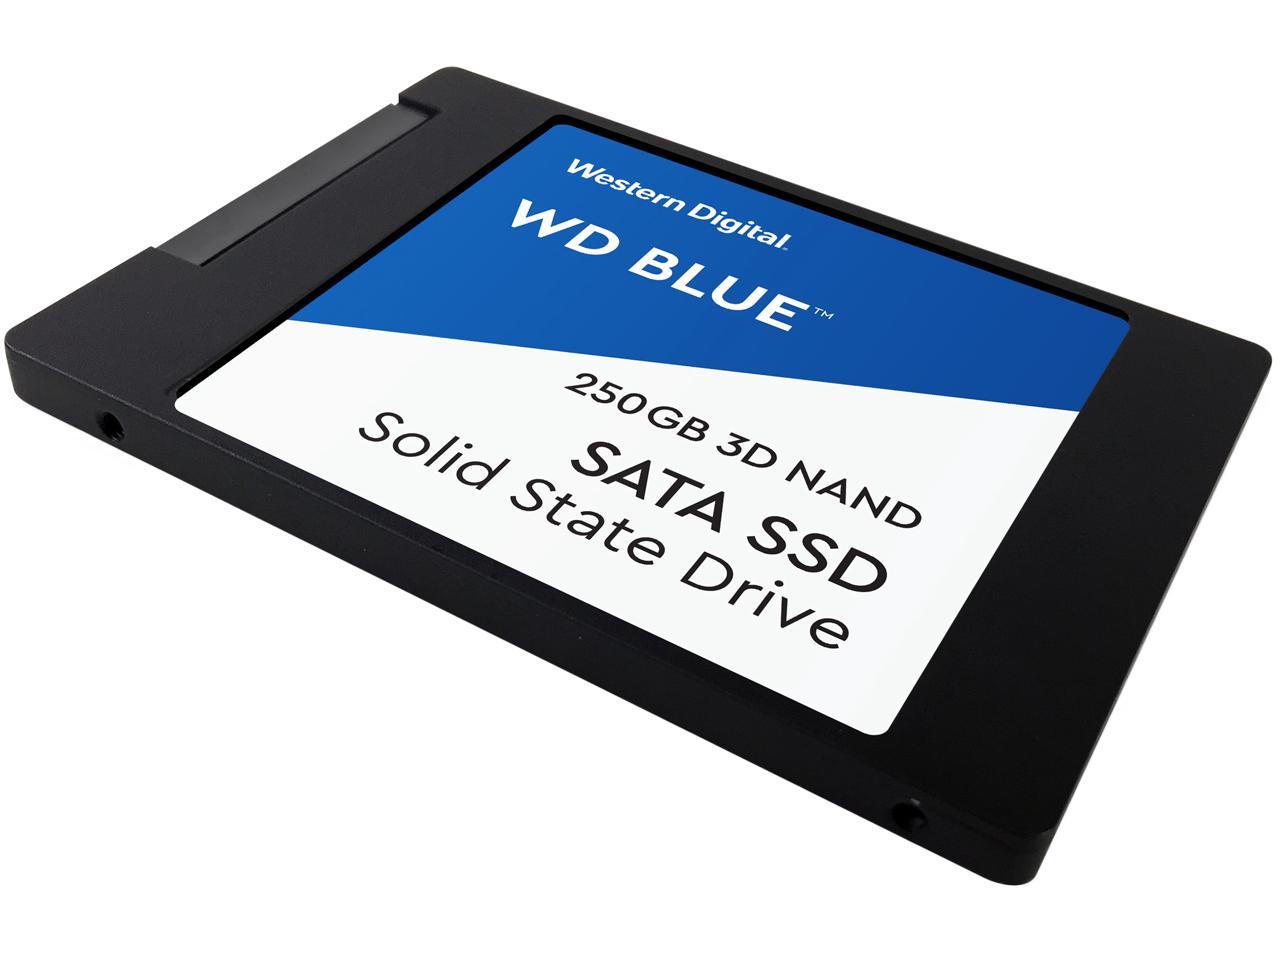 WD Blue 3D NAND 250GB Internal SSD - SATA III 6Gb/s 2.5"/7mm Solid